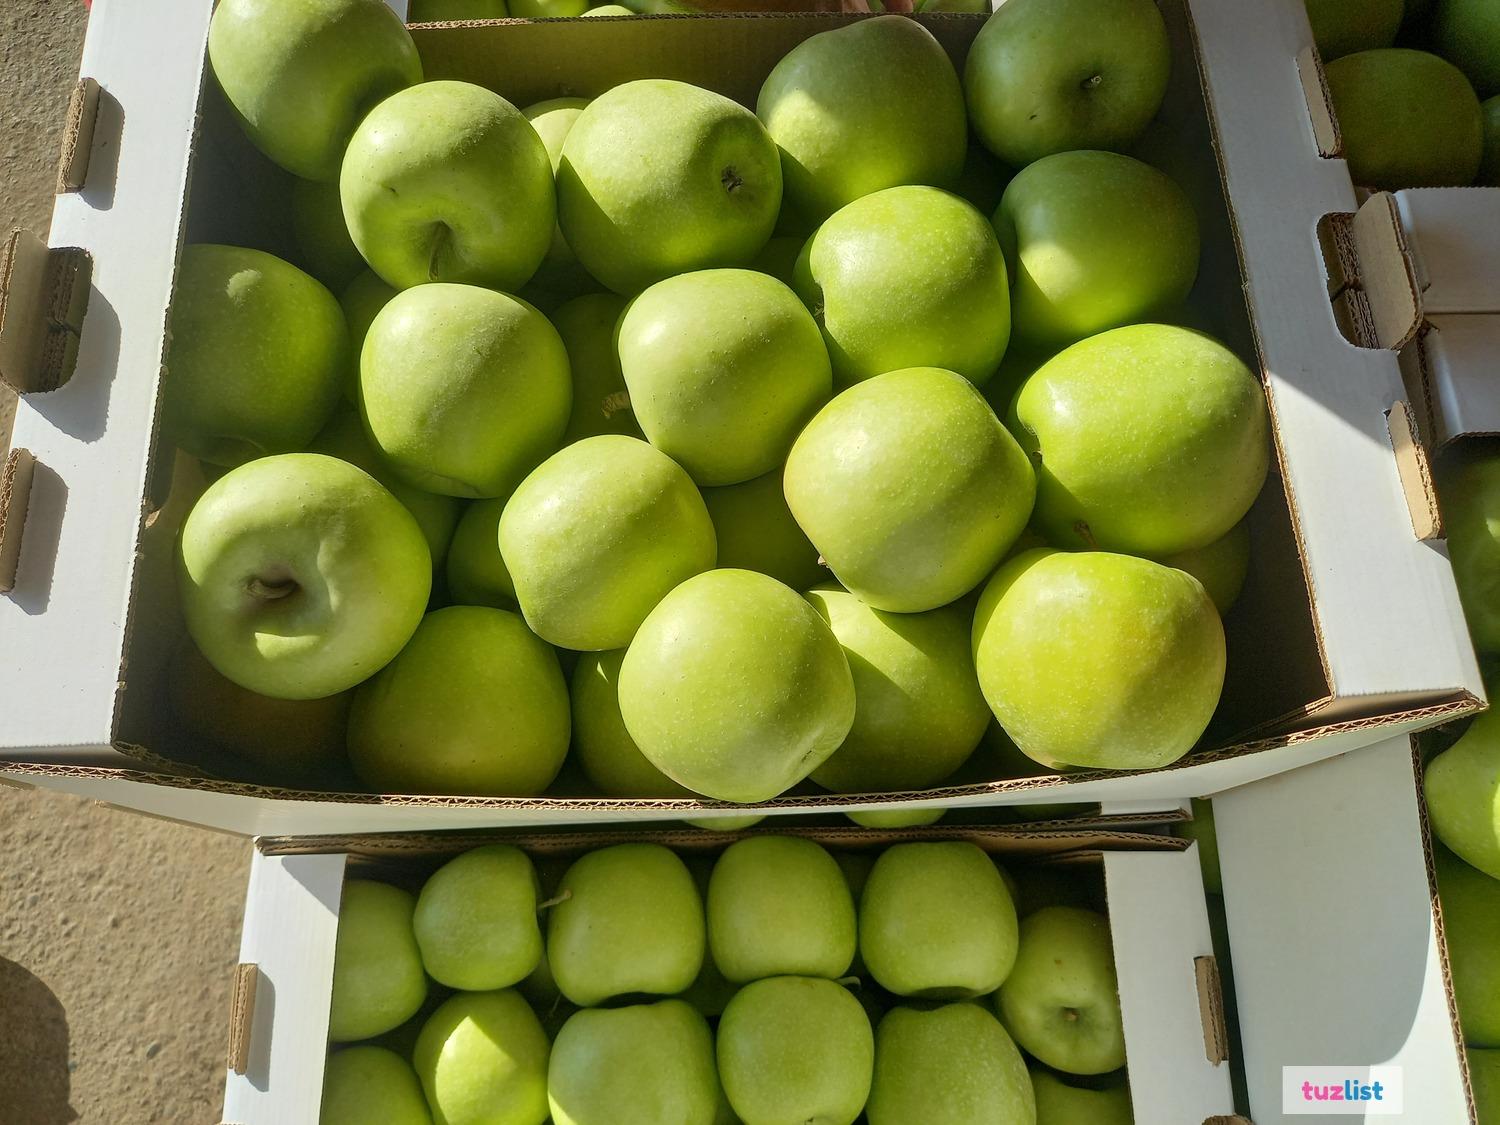 Купить яблоко недорого. Яблоки оптом. Яблоки крымские 1кг. Картинки для объявления продажи яблок. ДСК яблоко красное фасованное 1 кг plu 609 сколько стоит.